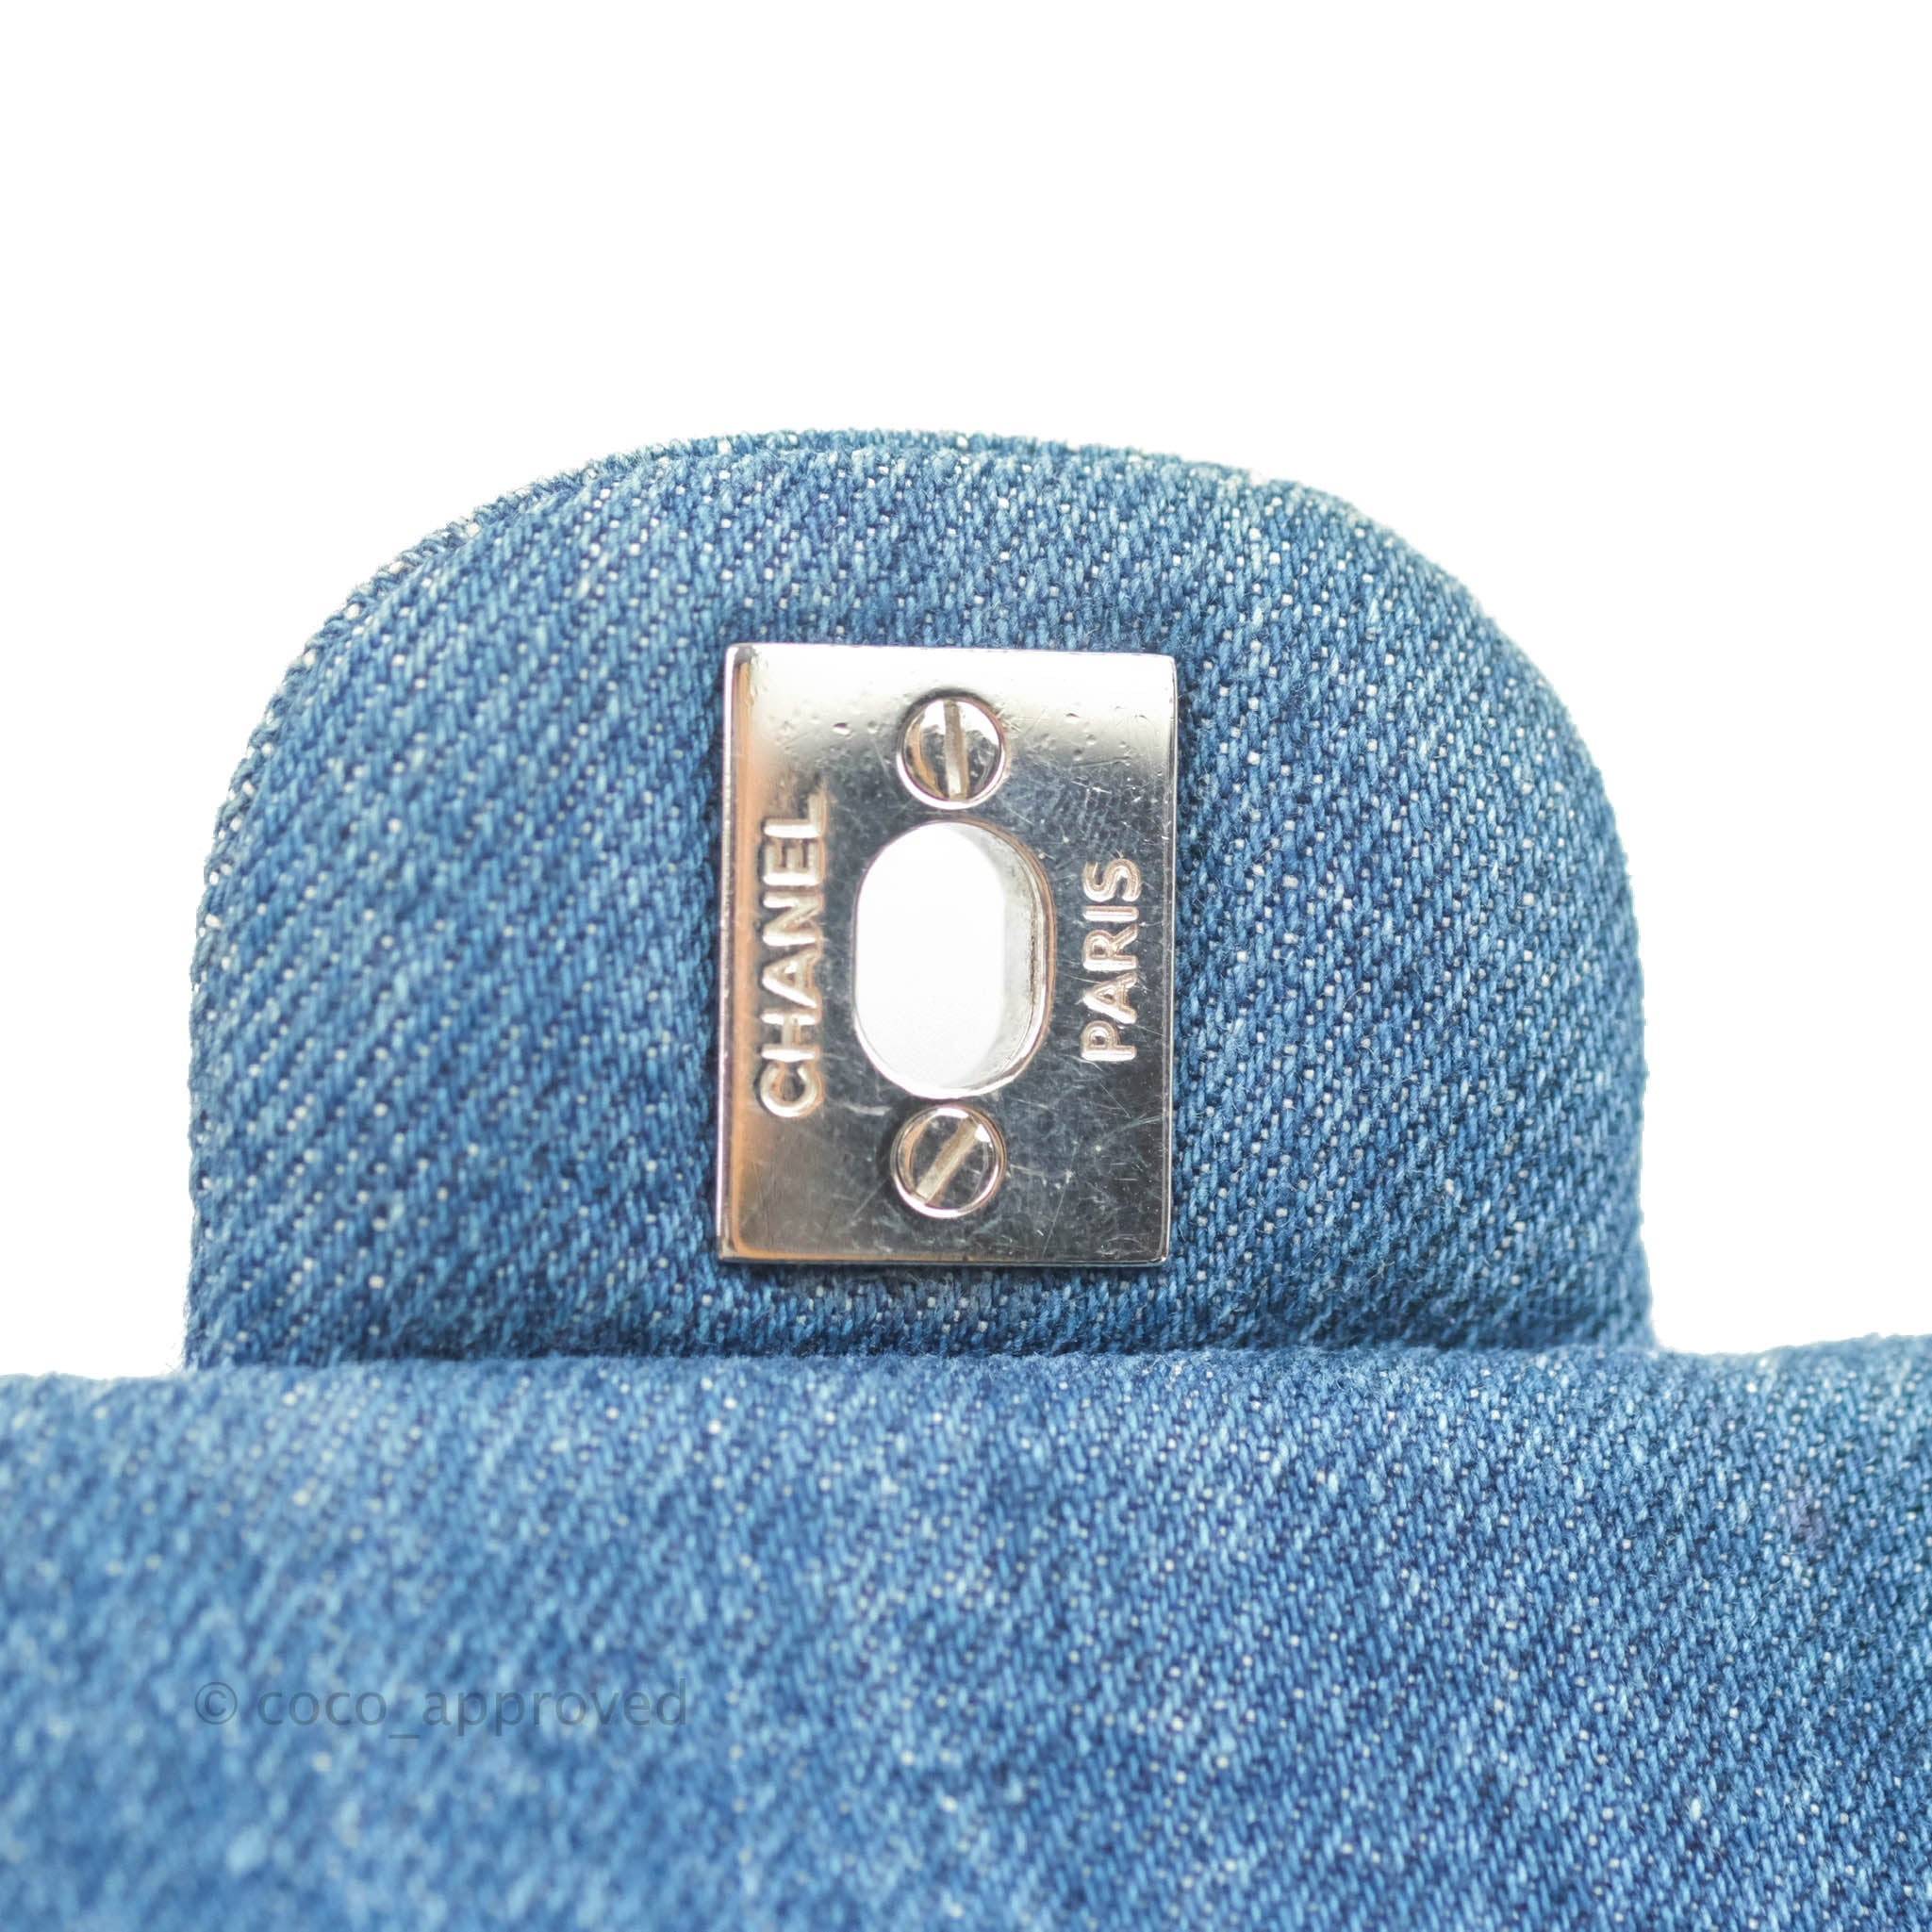 Chanel Dark Blue Quilted Denim Clutch With Chain Gold Hardware